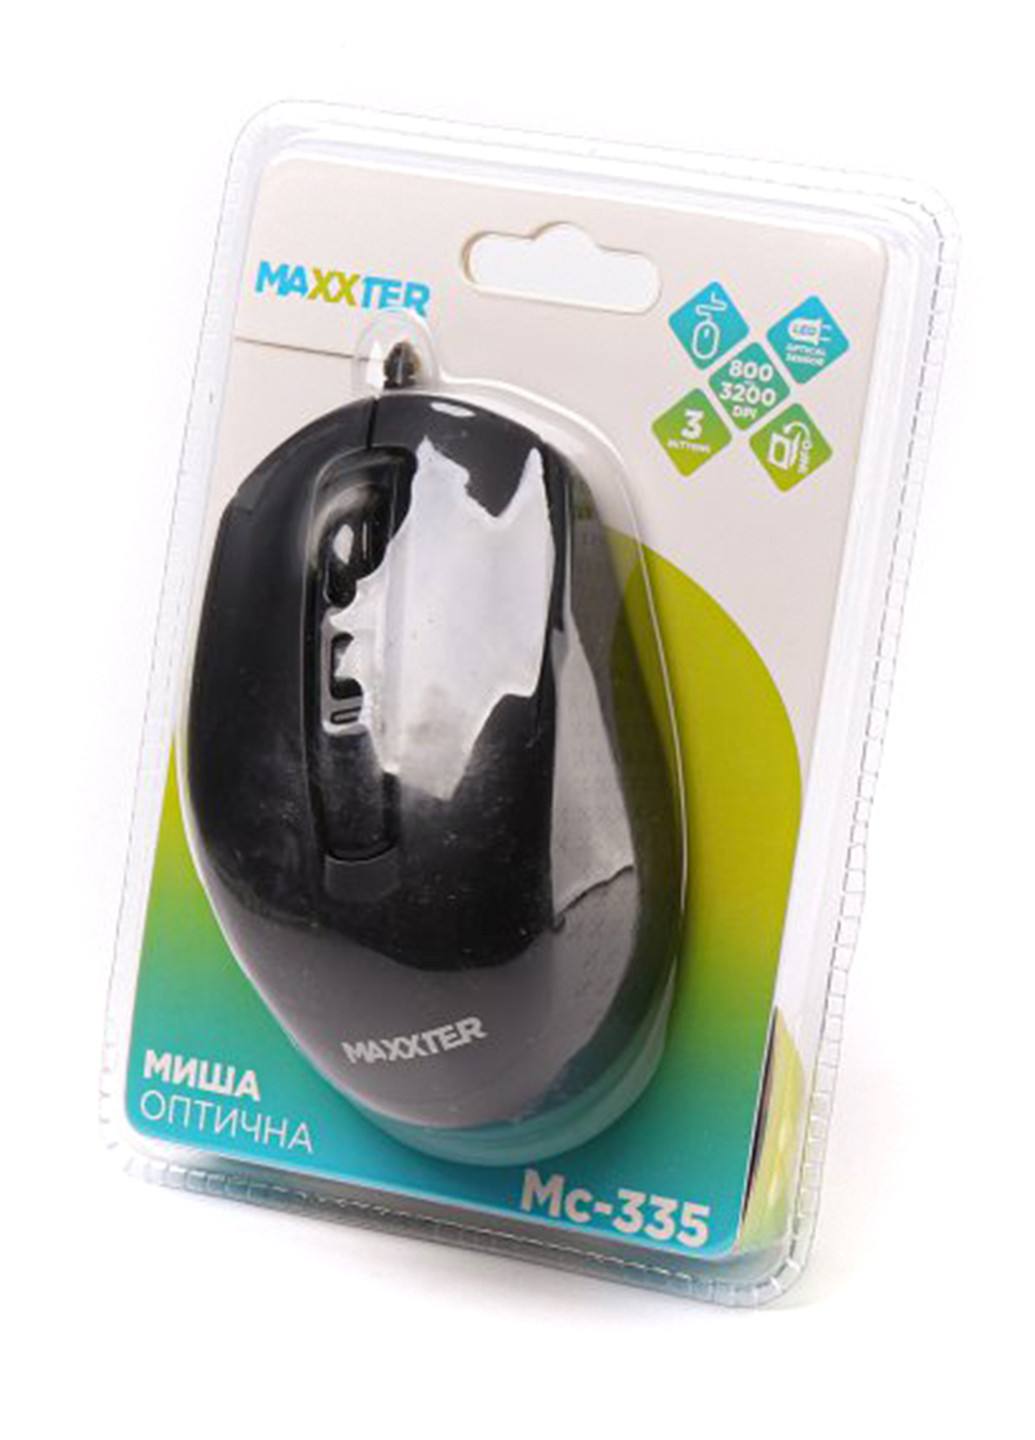 Миша оптична Maxxter mc-335 (138100197)